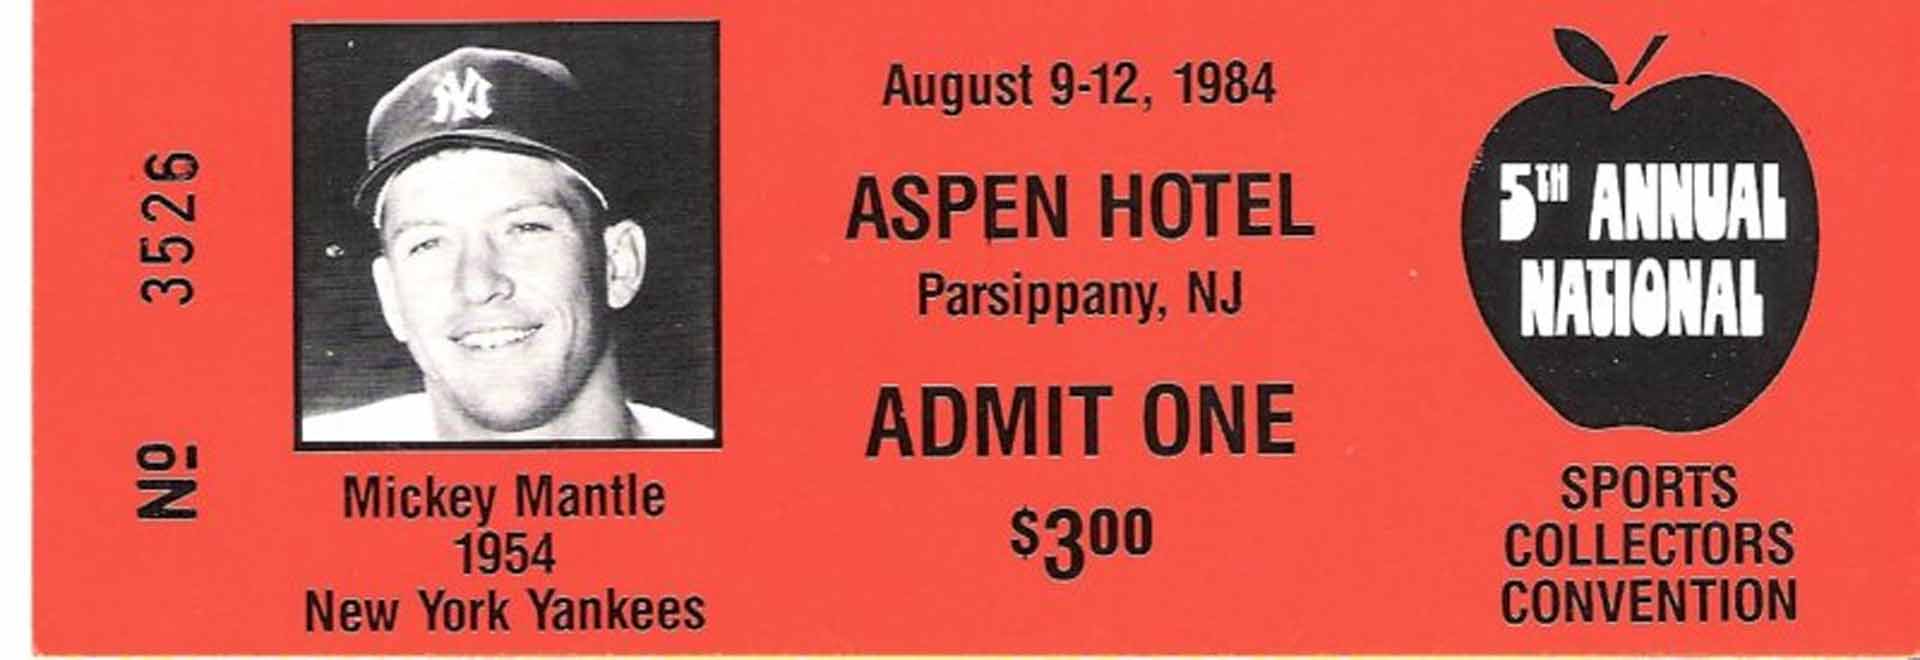 1984 show ticket august